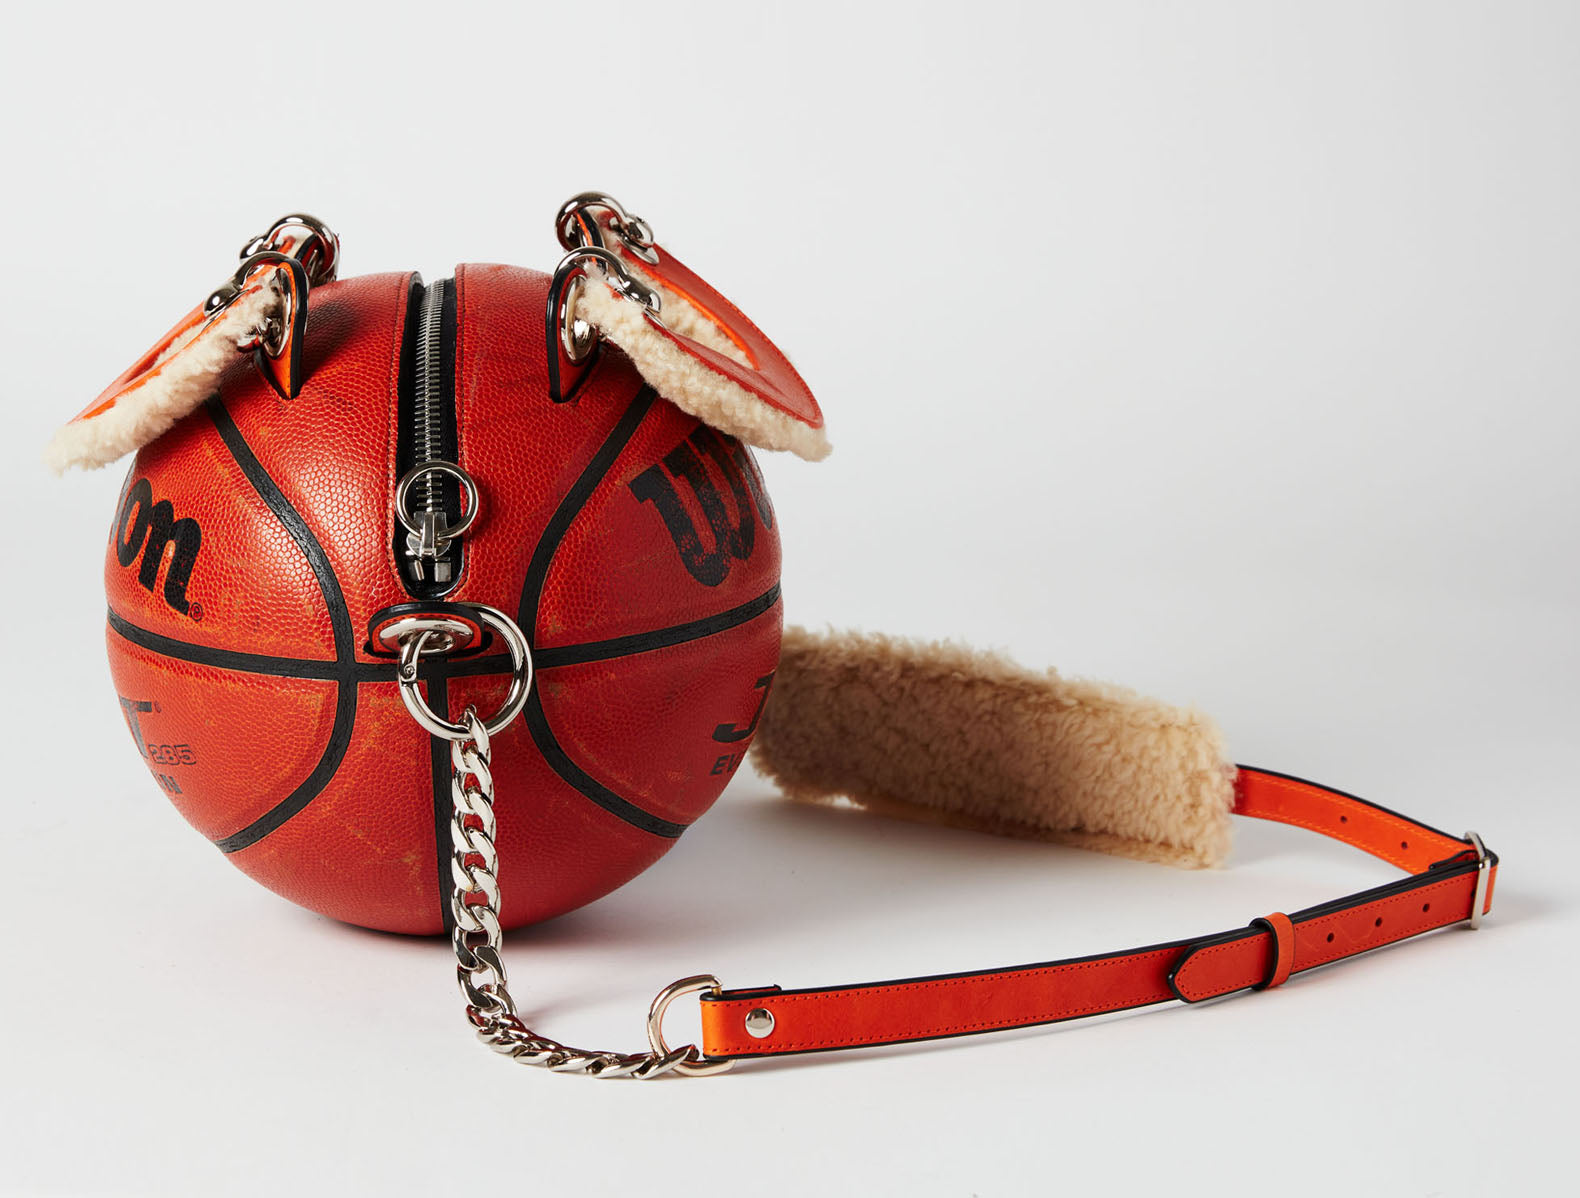 Vintage Wilson Basketball Purse – Andrea Bergart Shop